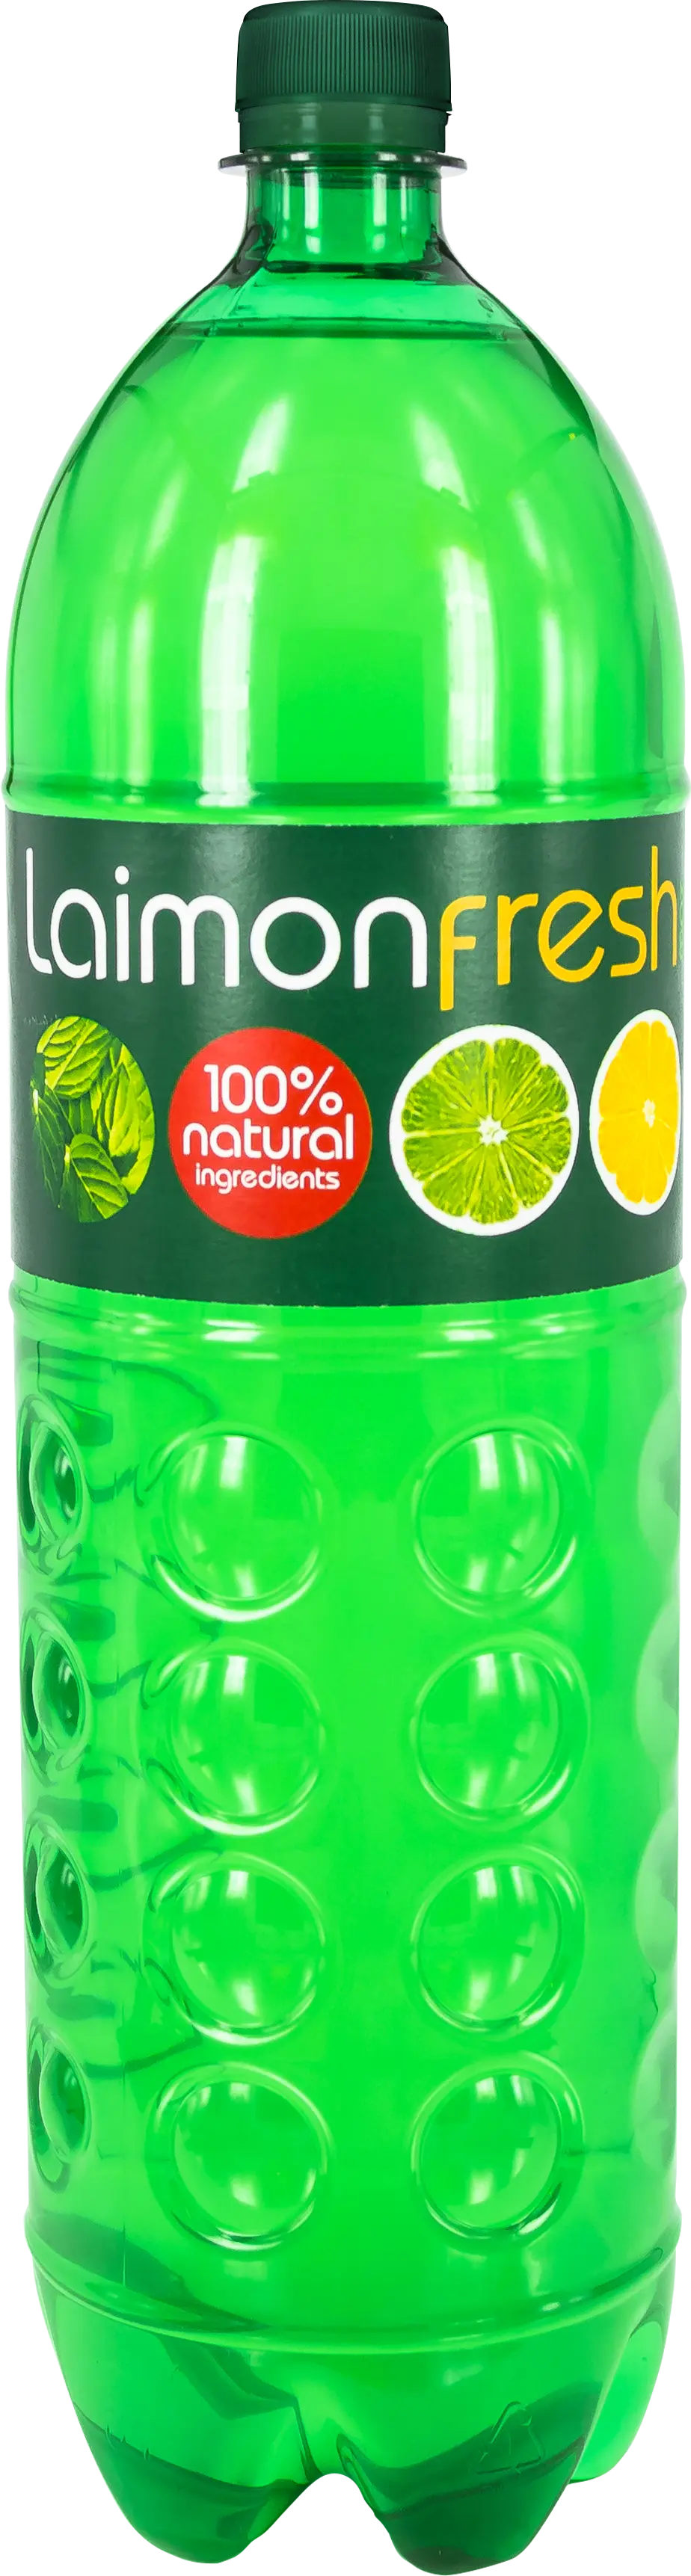 Напиток безалкогольный среднегазированный   «Лаймон фрэш макс (Laimon fresh max)» 1,5 л